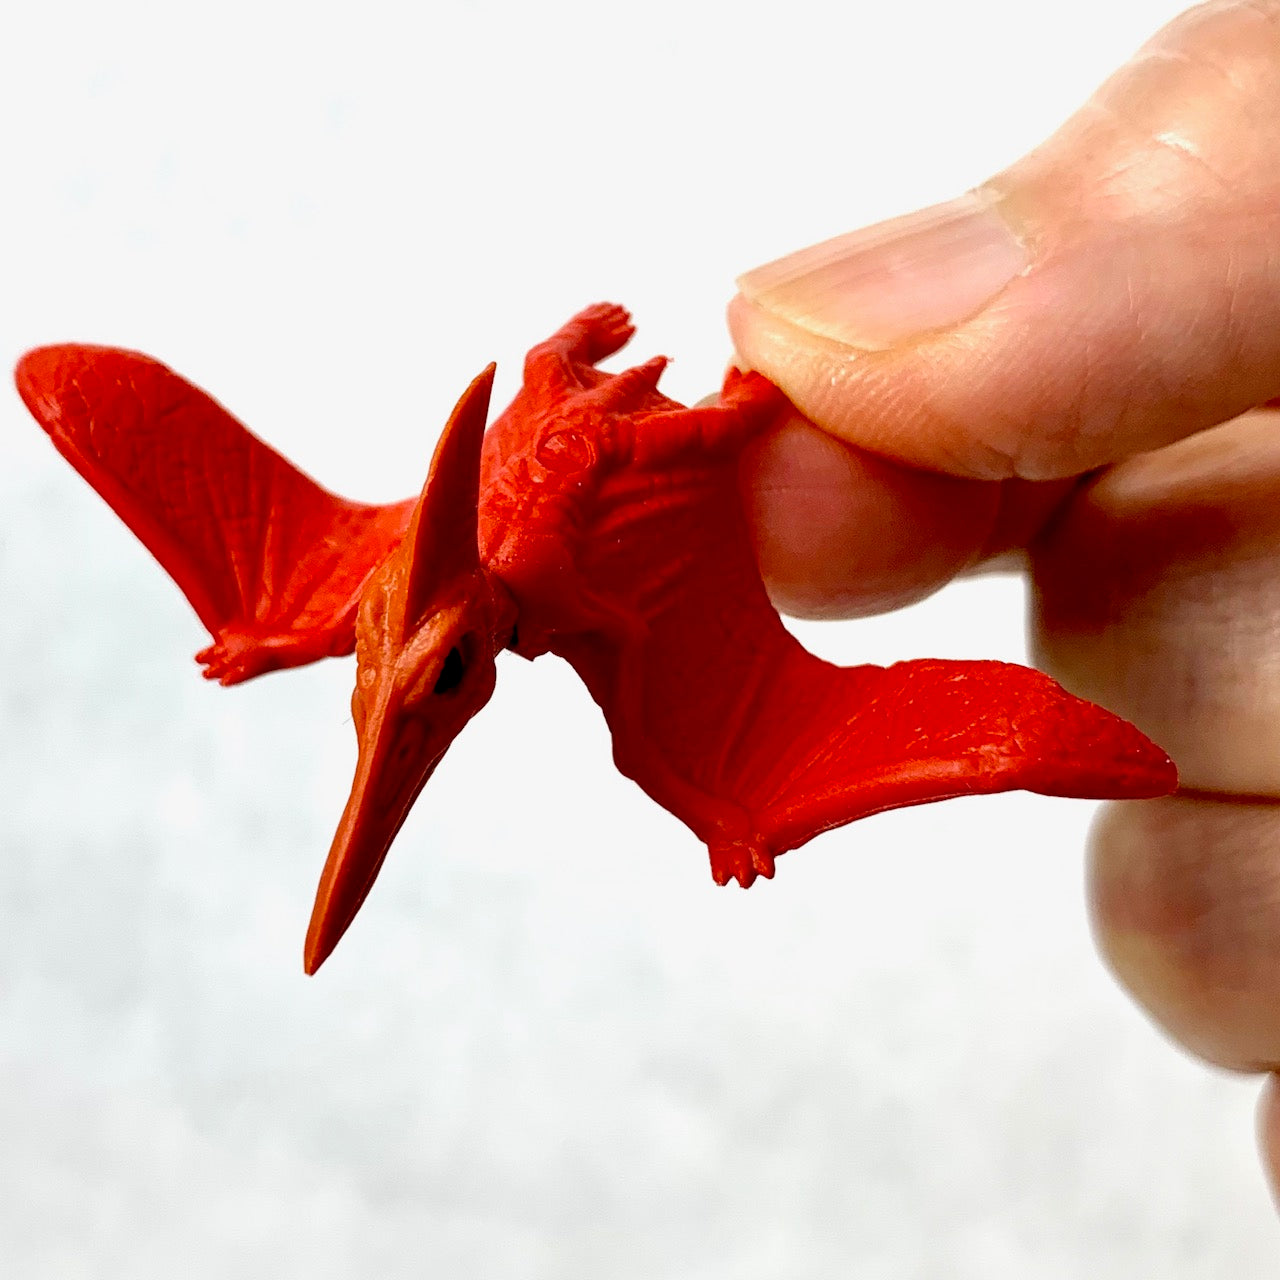 Tiny Pterodactyl Paper Model